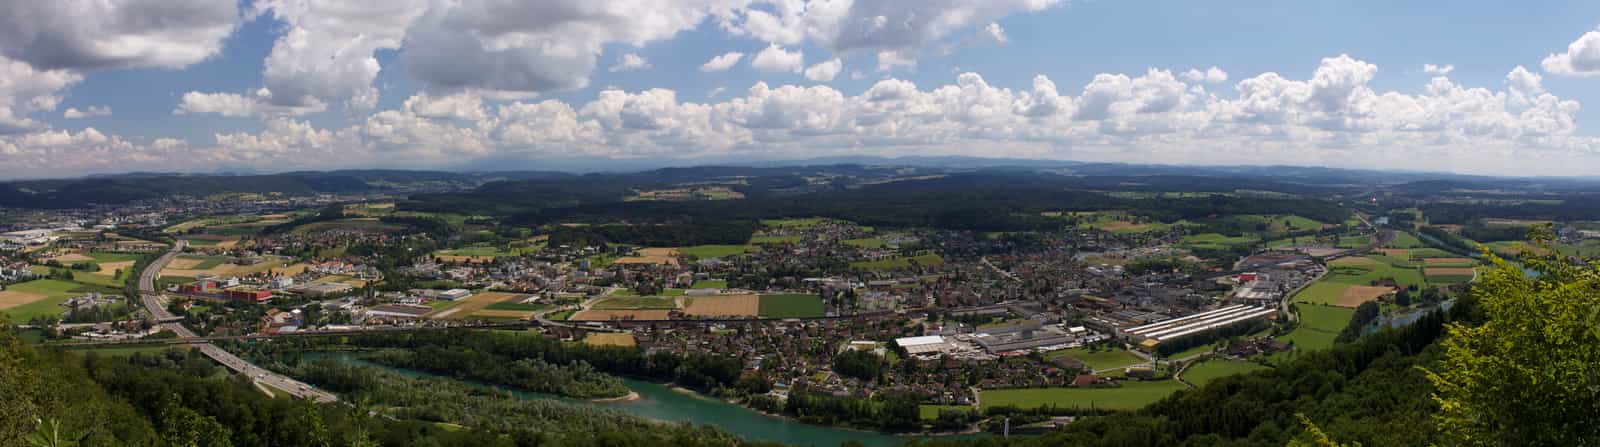 Rothrist, Panorama von der Höchi Flue